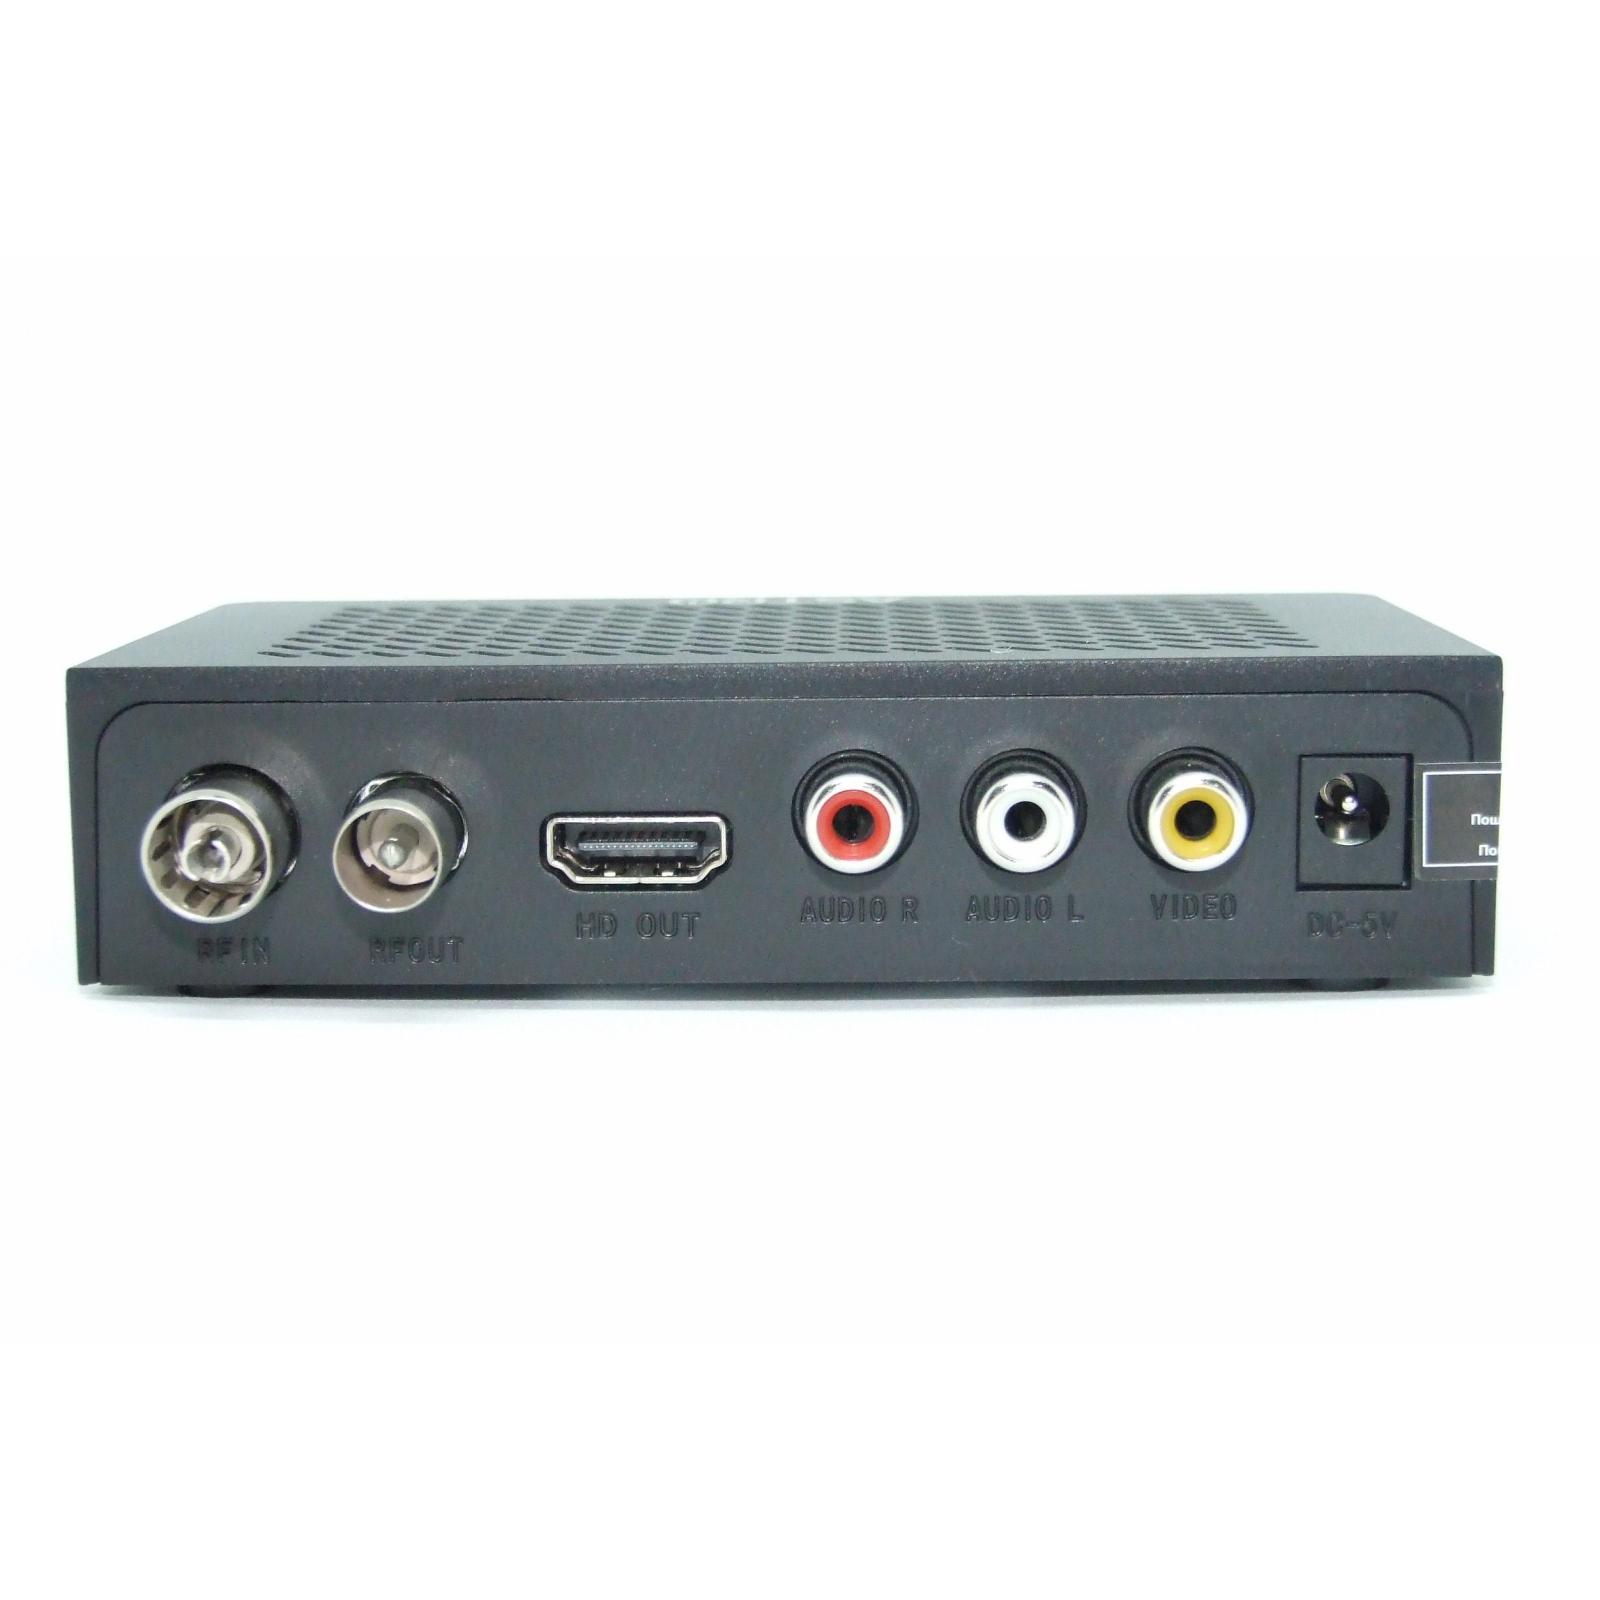 ТВ тюнер Astro DVB-T, DVB-T2, + USB-port (TA-23) зображення 2